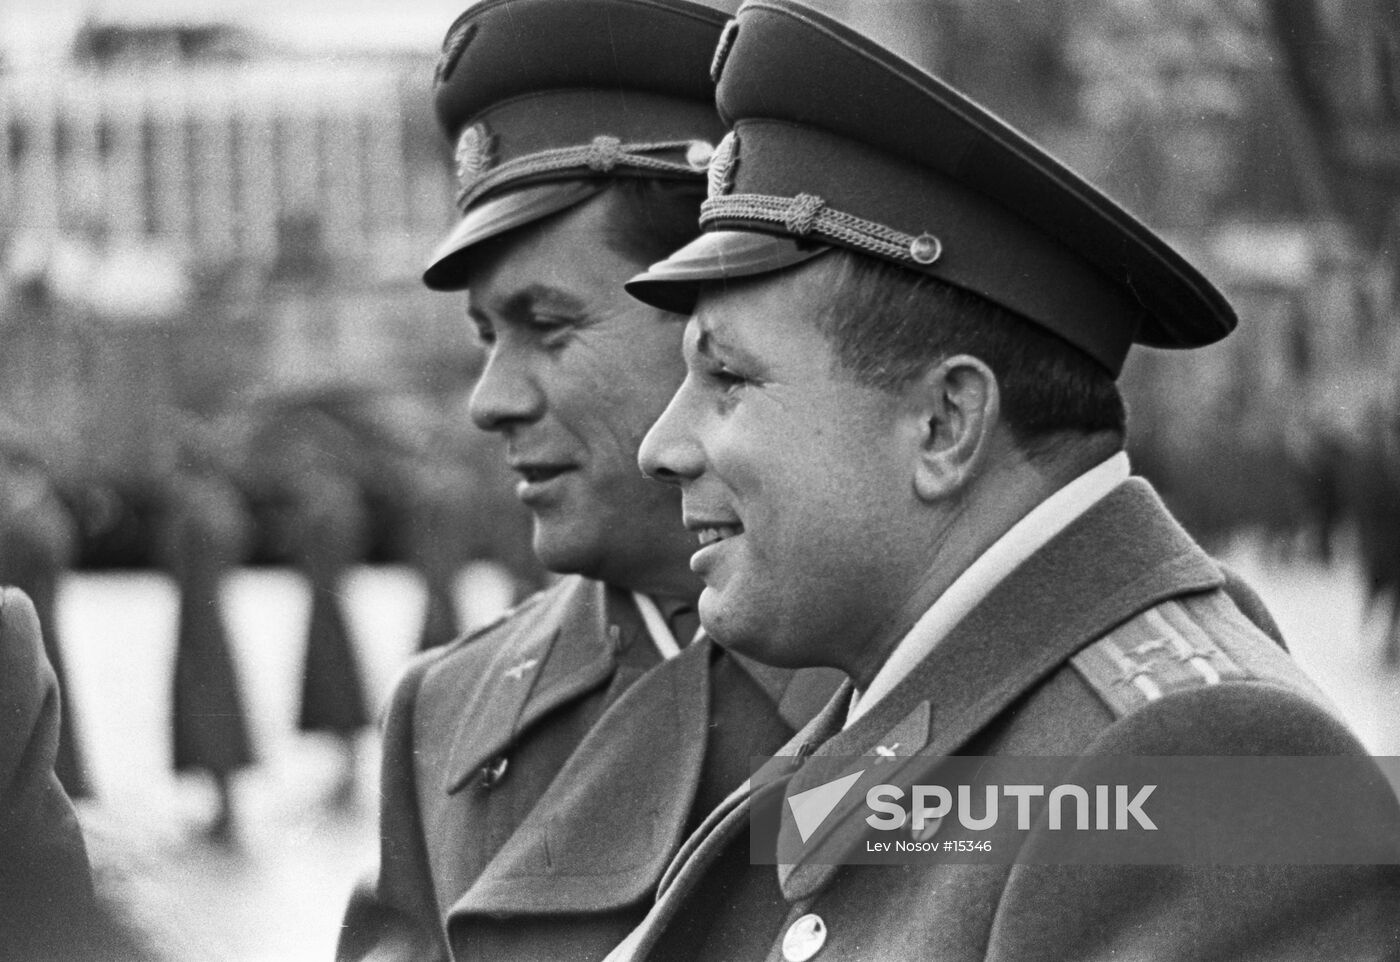 Soviet cosmonauts Yuri Gagarin and Pavel Popovich.